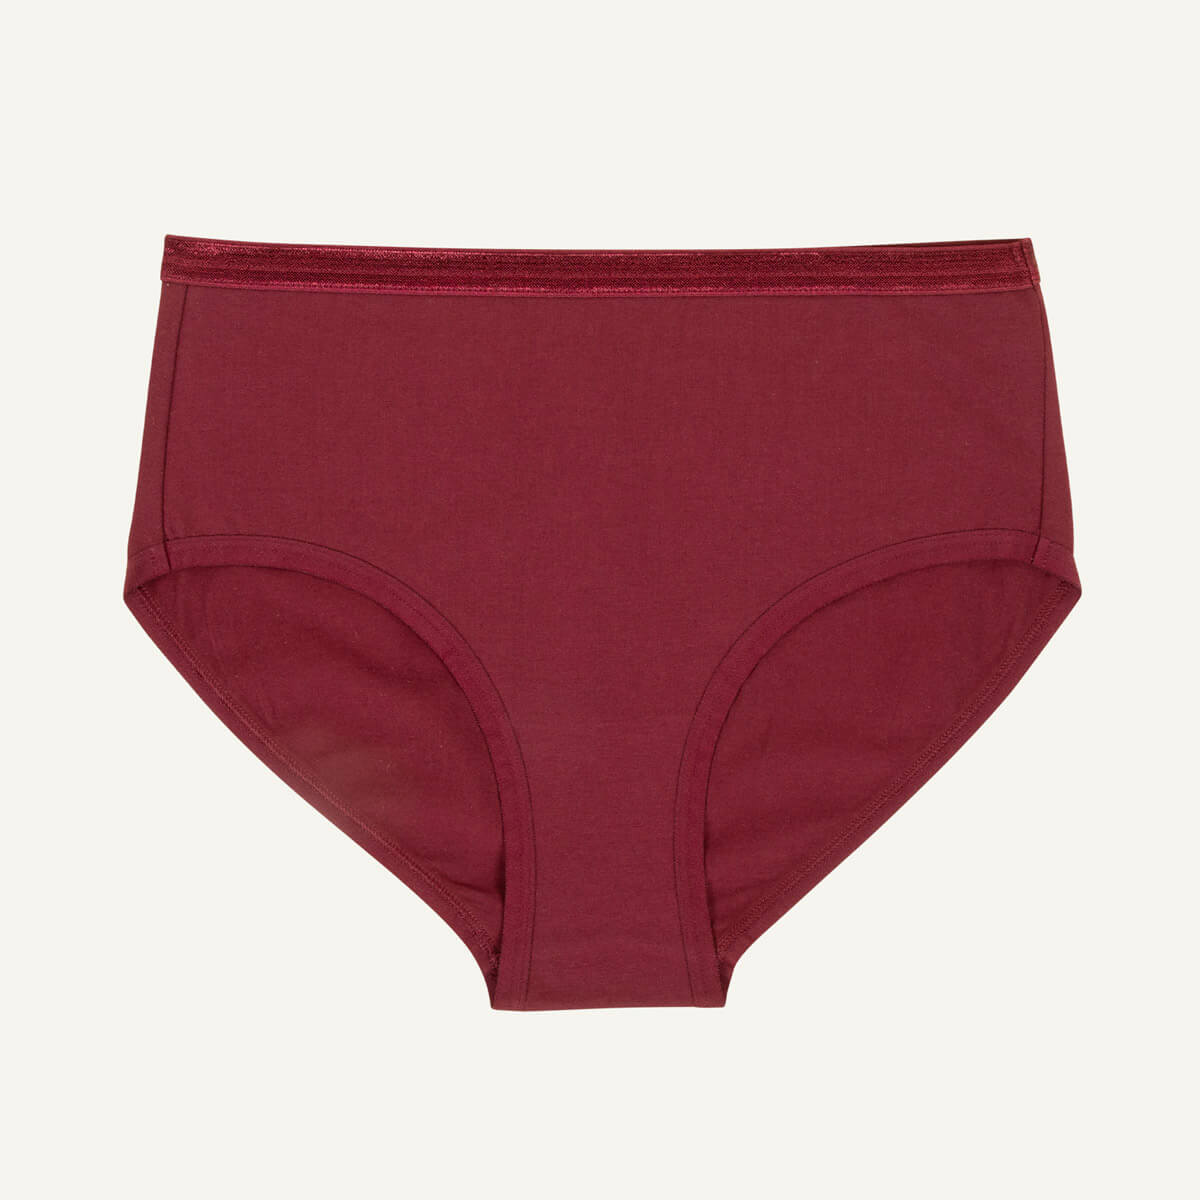 B91xZ Womens Cotton Underwear Stretch Microfiber Low-Rise Brief Underwear,Red  XL 